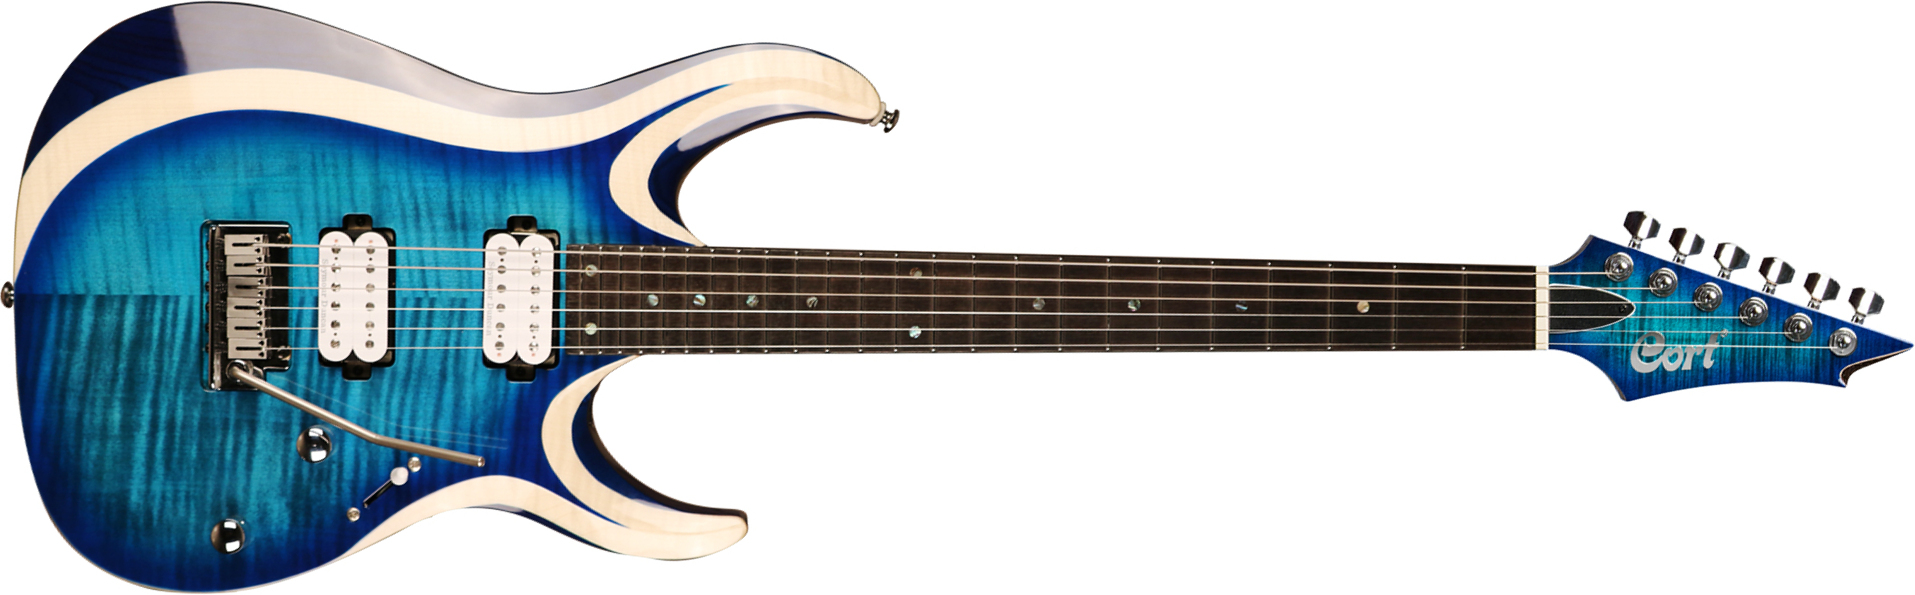 Cort X700 Duality Hh Seymour Duncan Ht Eb - Light Blue Burst - Guitare Électrique Forme Str - Main picture